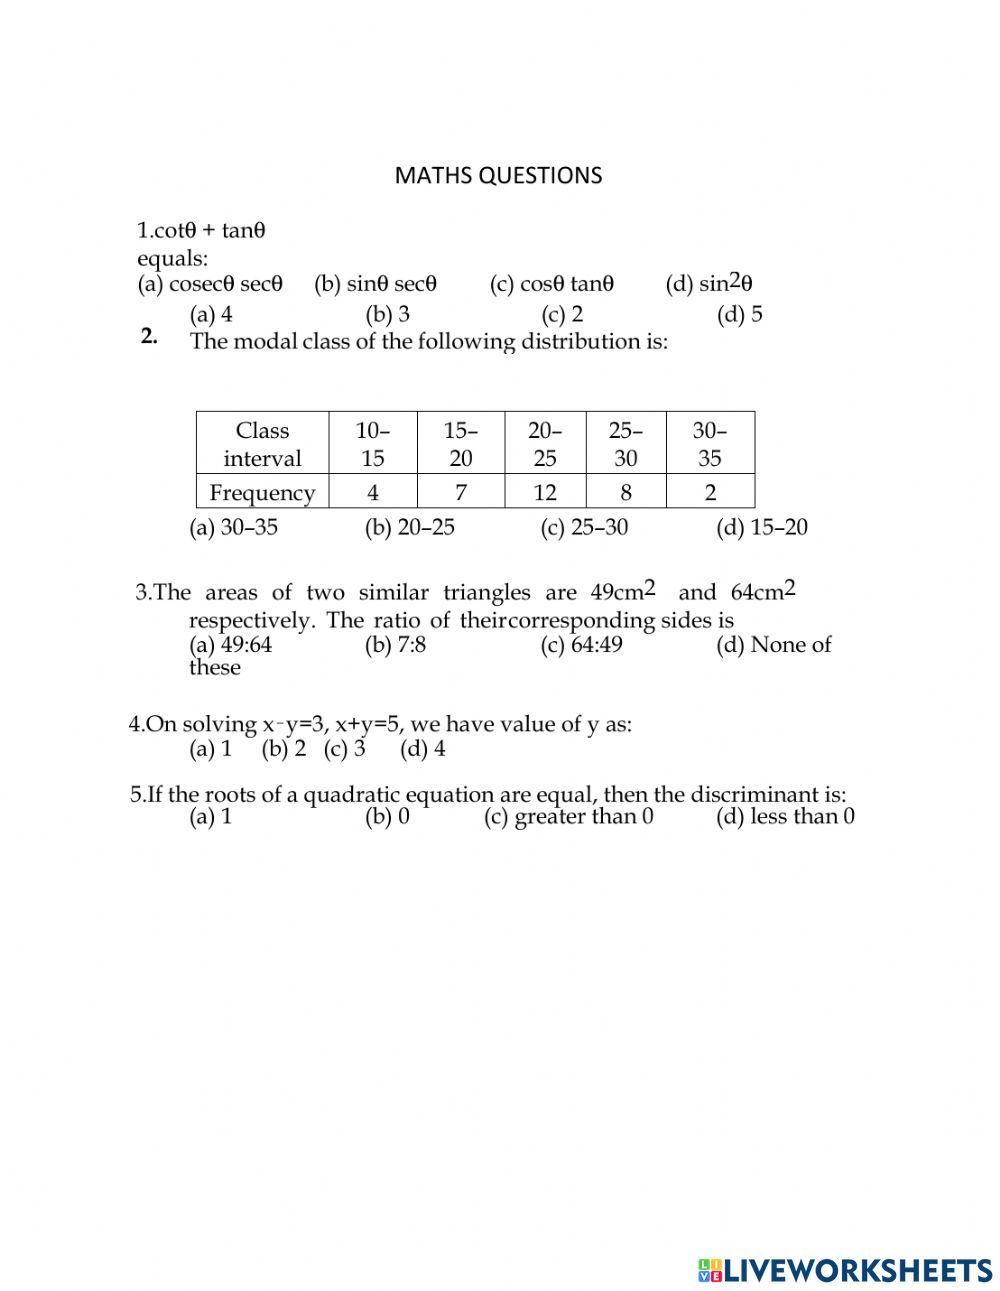 LGB's Maths quizz